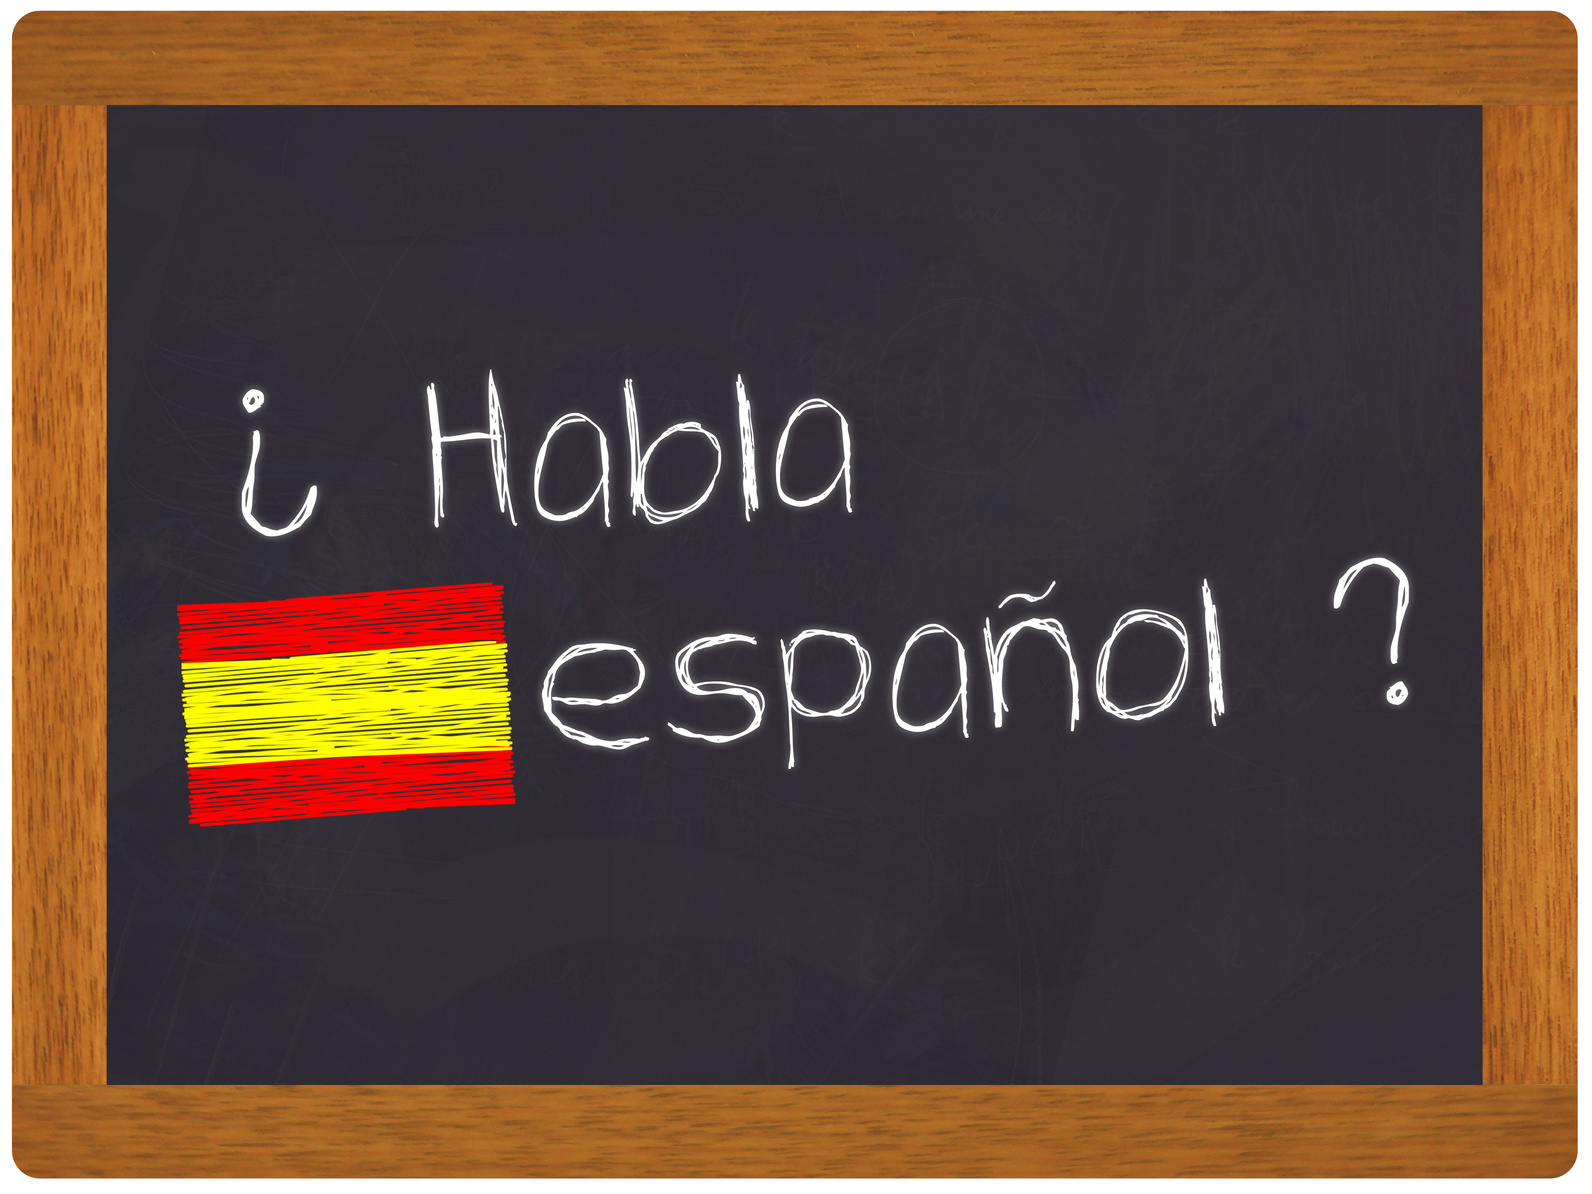 Formation Espagnol | #JeVeuxParler espagnol.